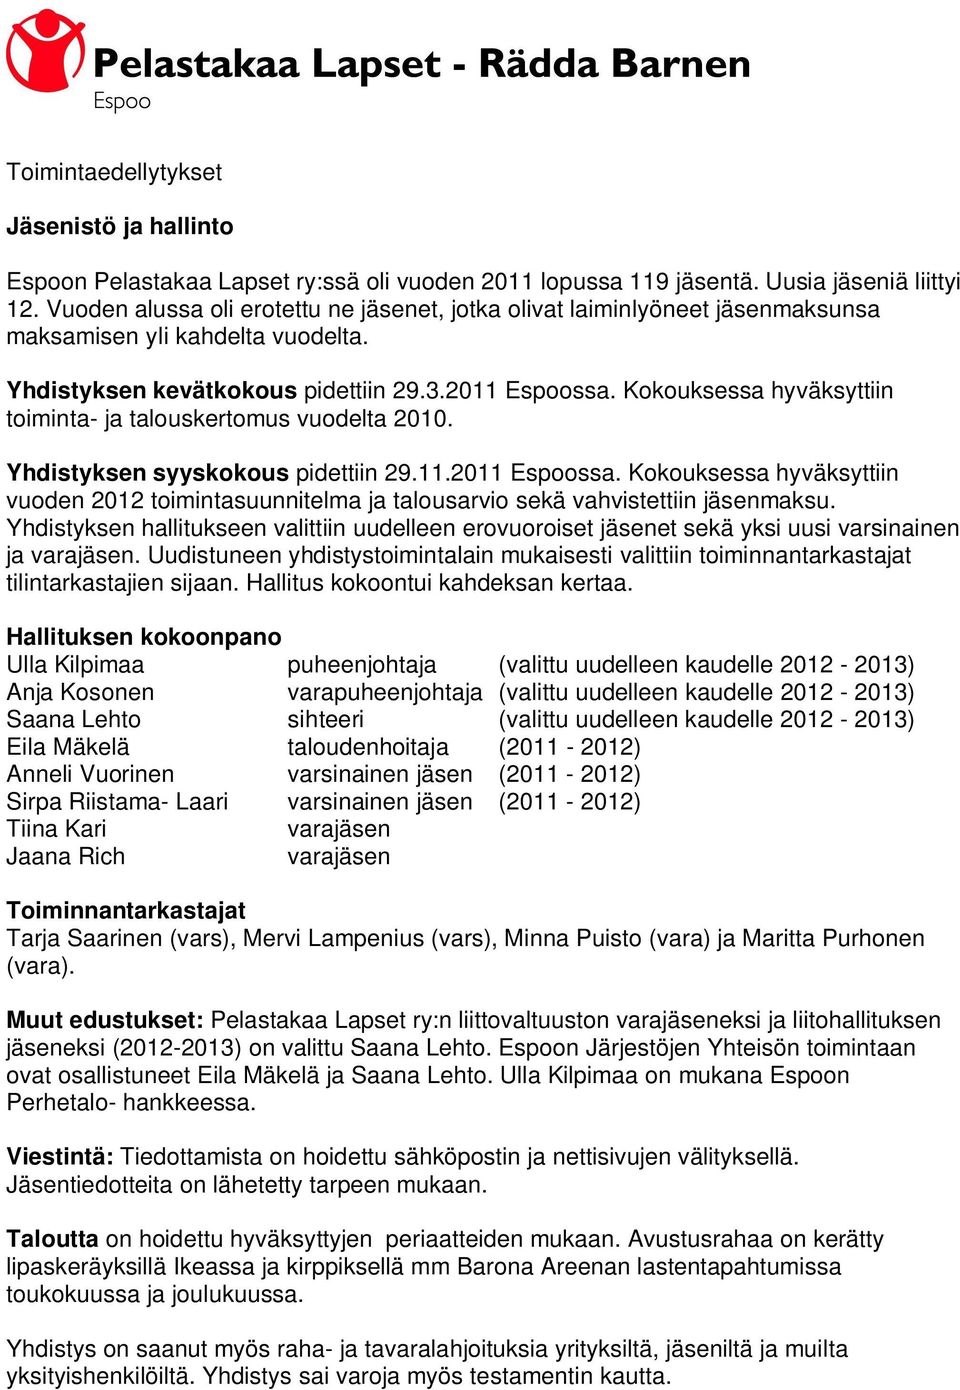 Kokouksessa hyväksyttiin toiminta- ja talouskertomus vuodelta 2010. Yhdistyksen syyskokous pidettiin 29.11.2011 Espoossa.